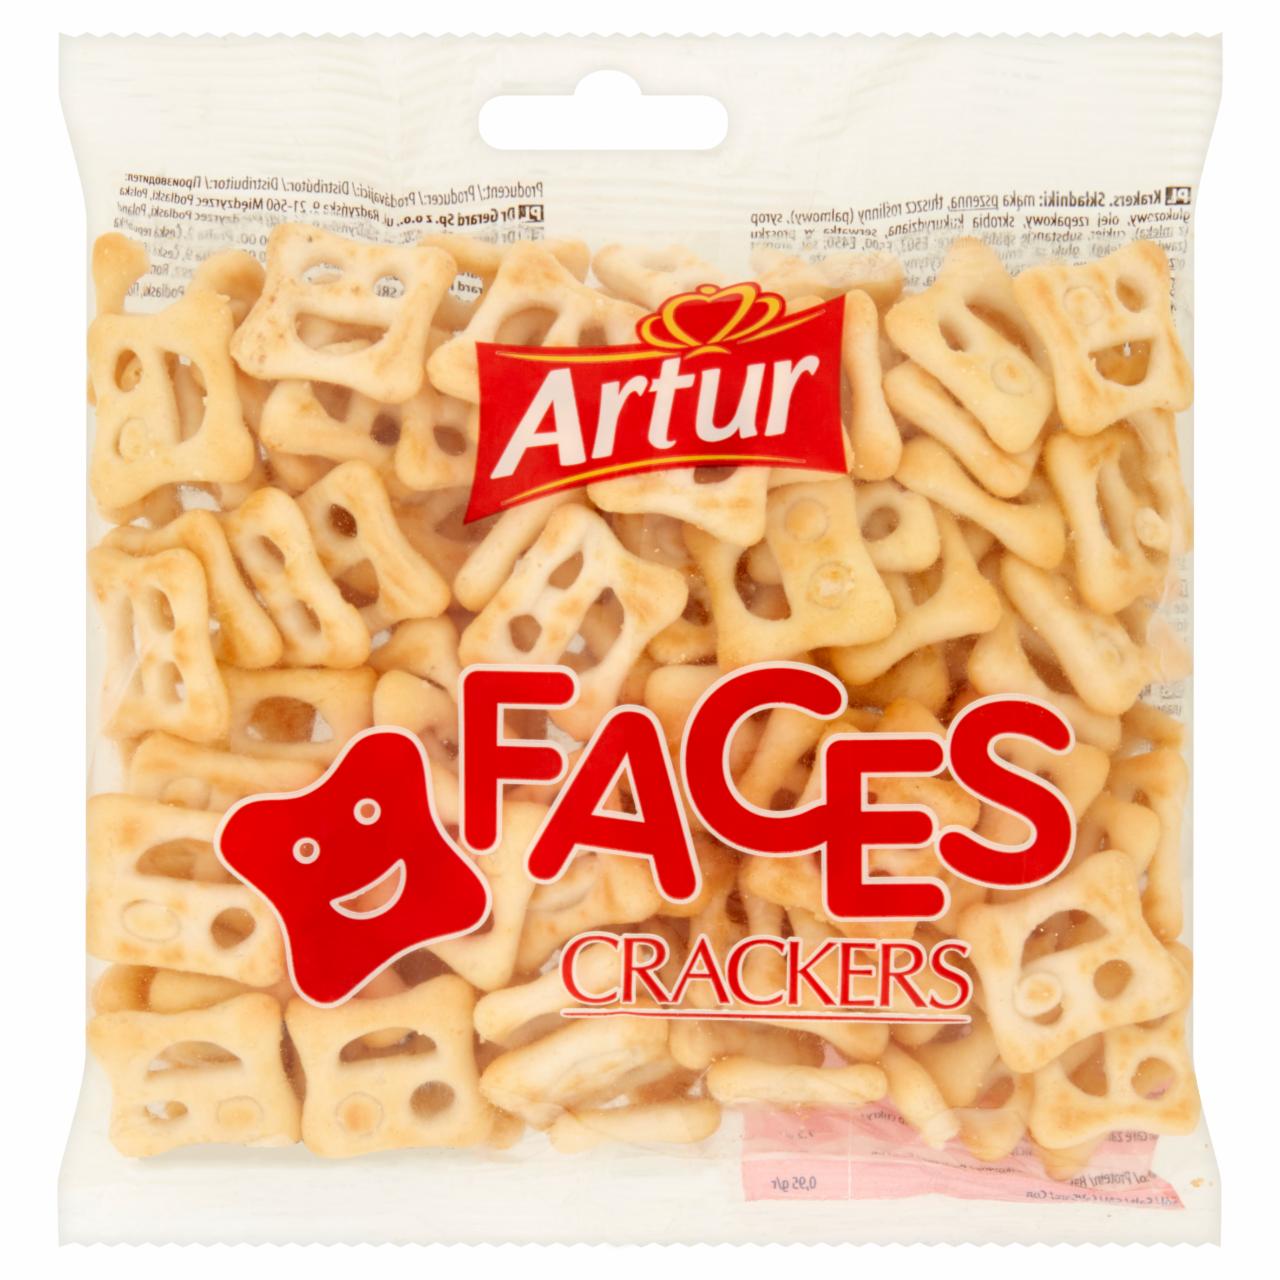 Zdjęcia - Artur faces crackers